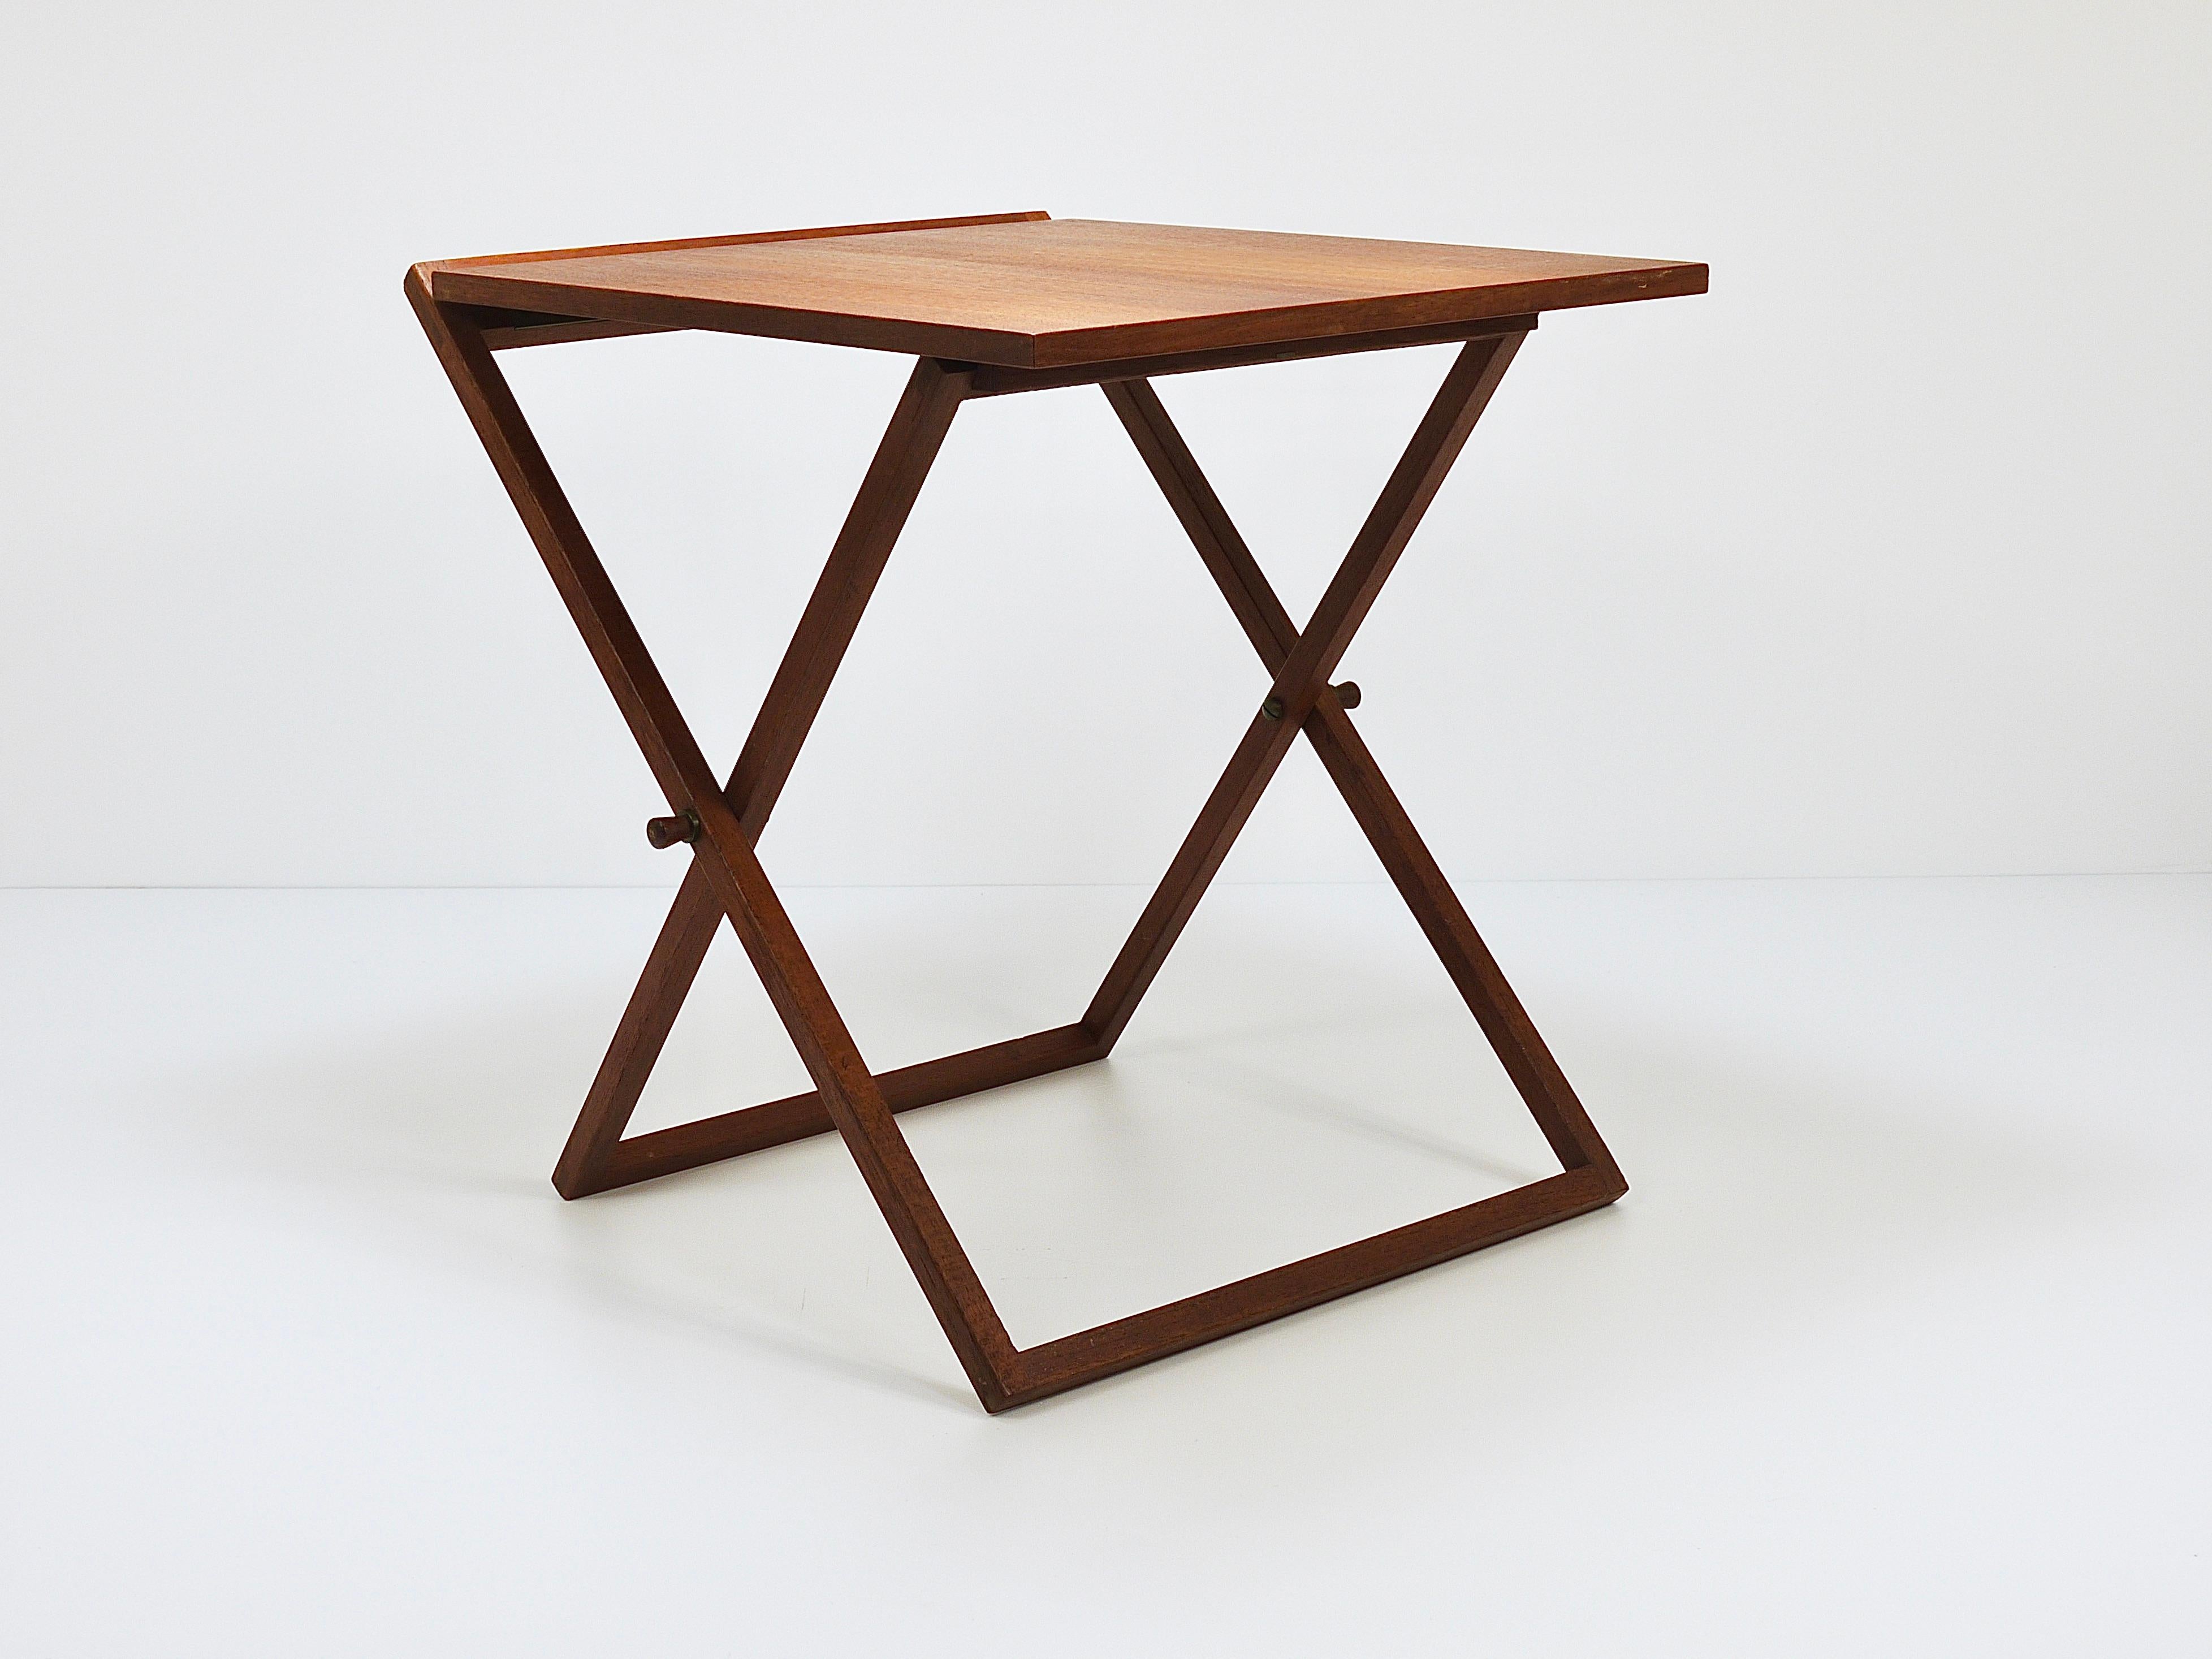 Three Illum Wikkelso Danish Modern Teak Folding Tables, Silkeborg Denmark, 1960s For Sale 1